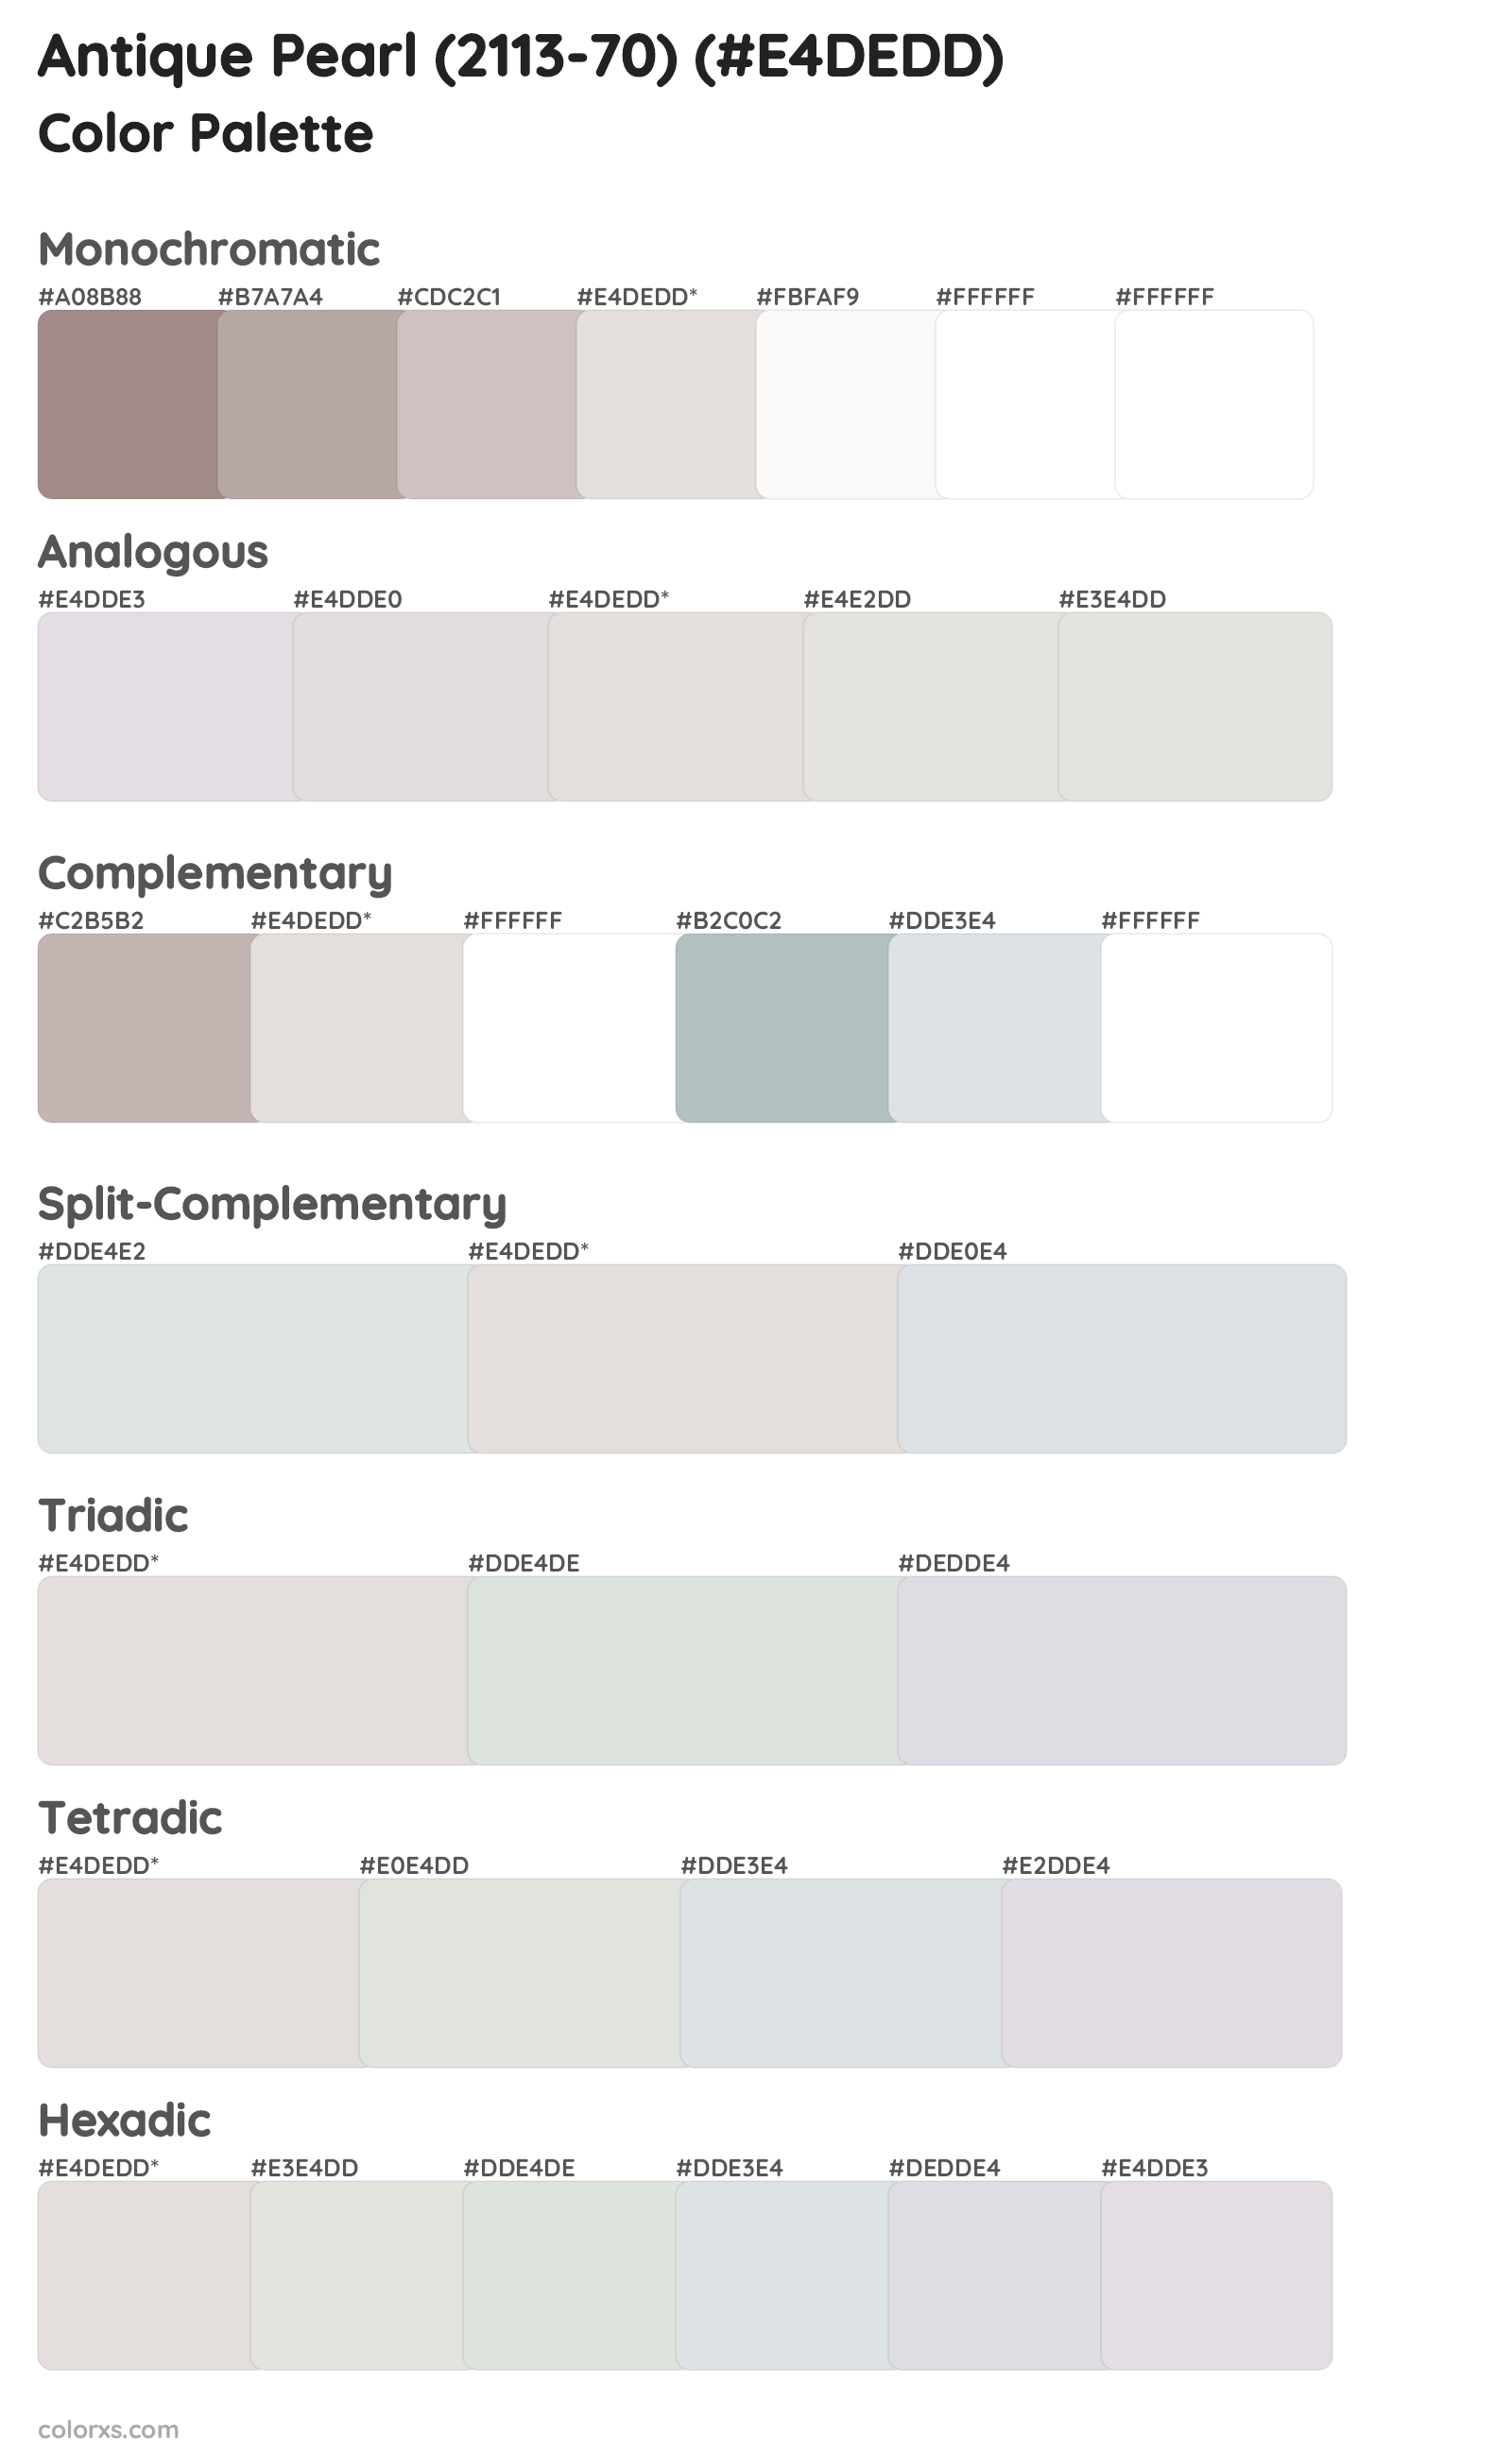 Antique Pearl (2113-70) Color Scheme Palettes